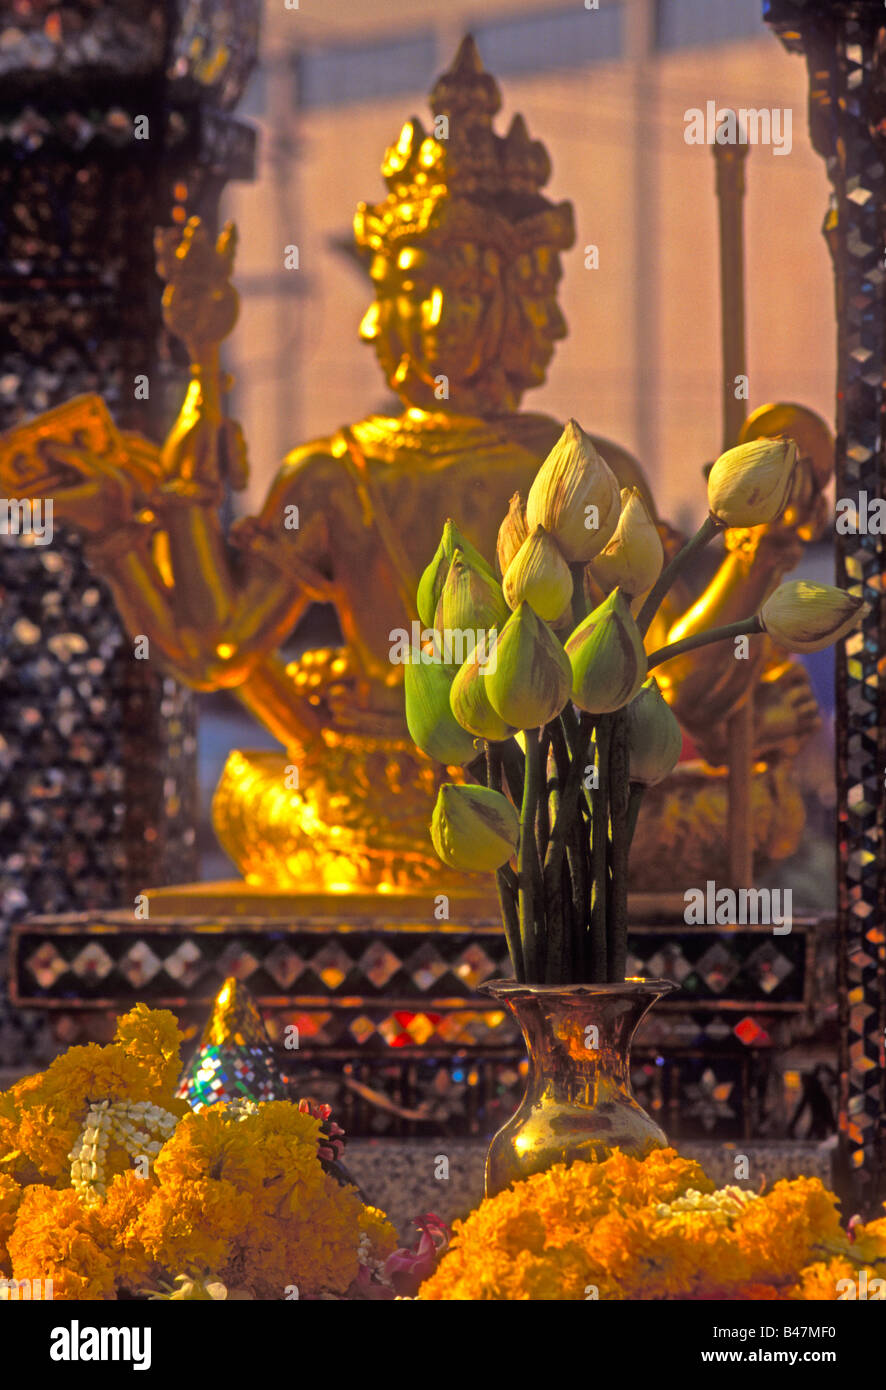 Brahma statue at Erawan Shrine, Bangkok, Thailand Stock Photo